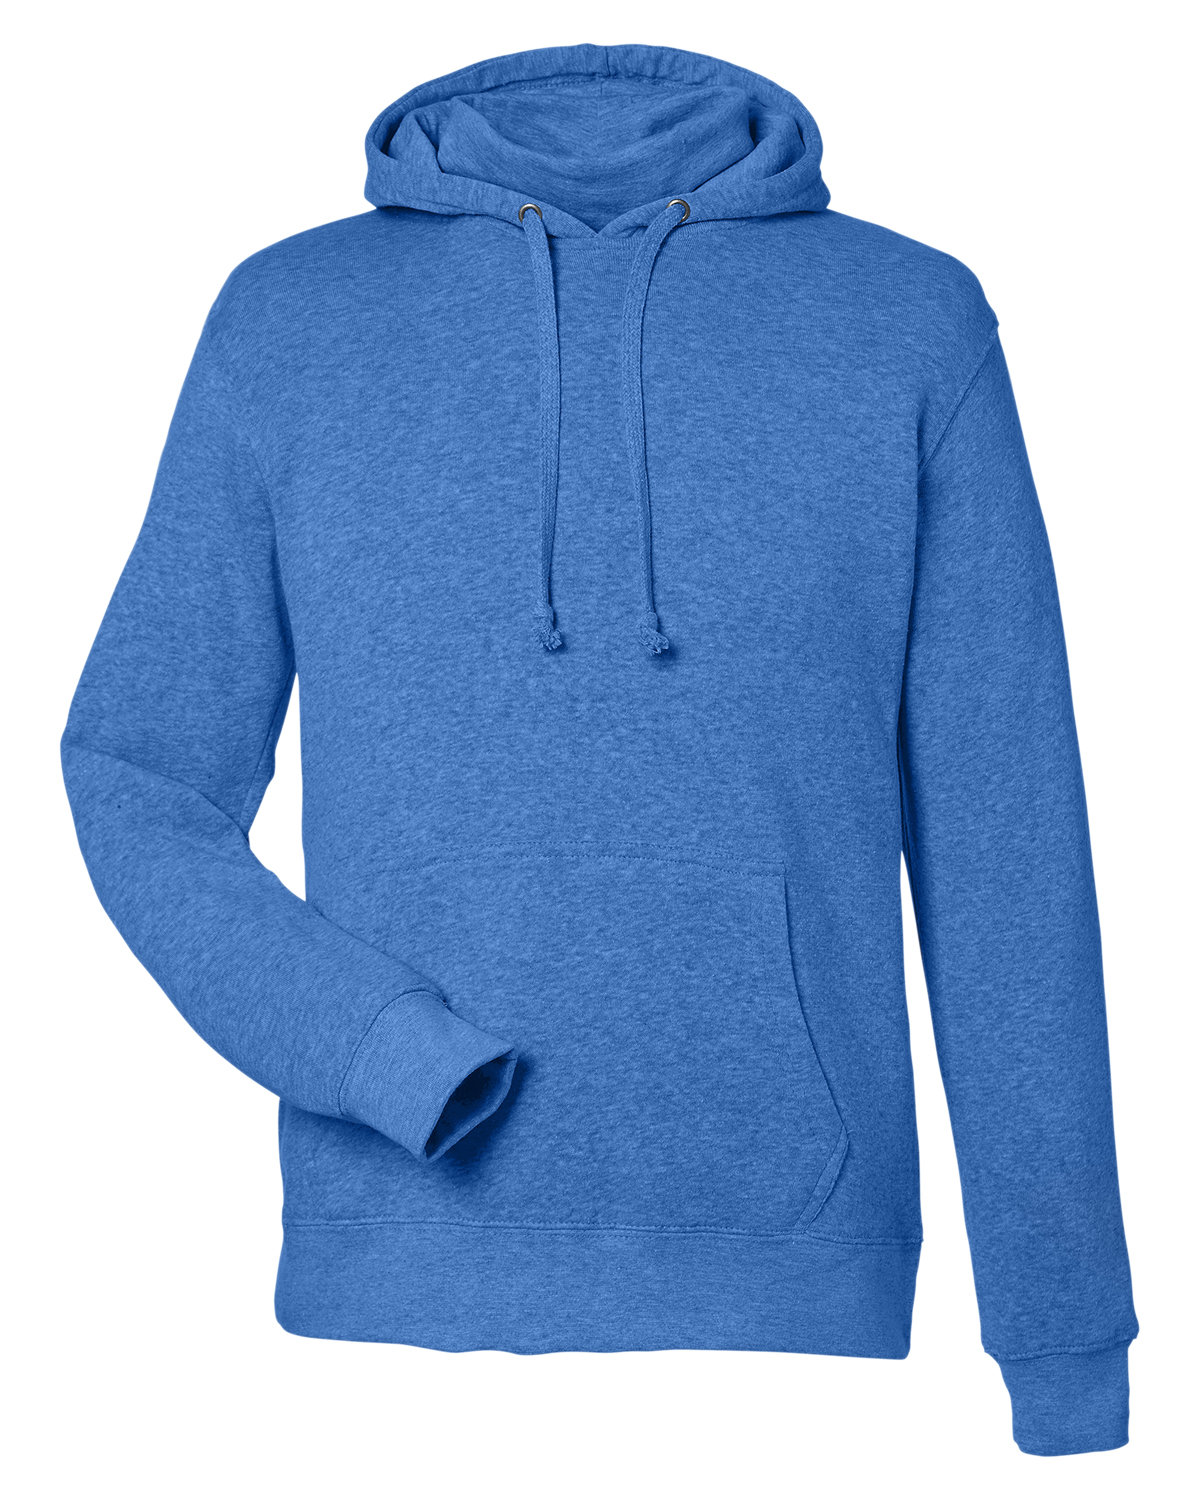 J America Unisex Gaiter Pullover Hooded Sweatshirt | alphabroder